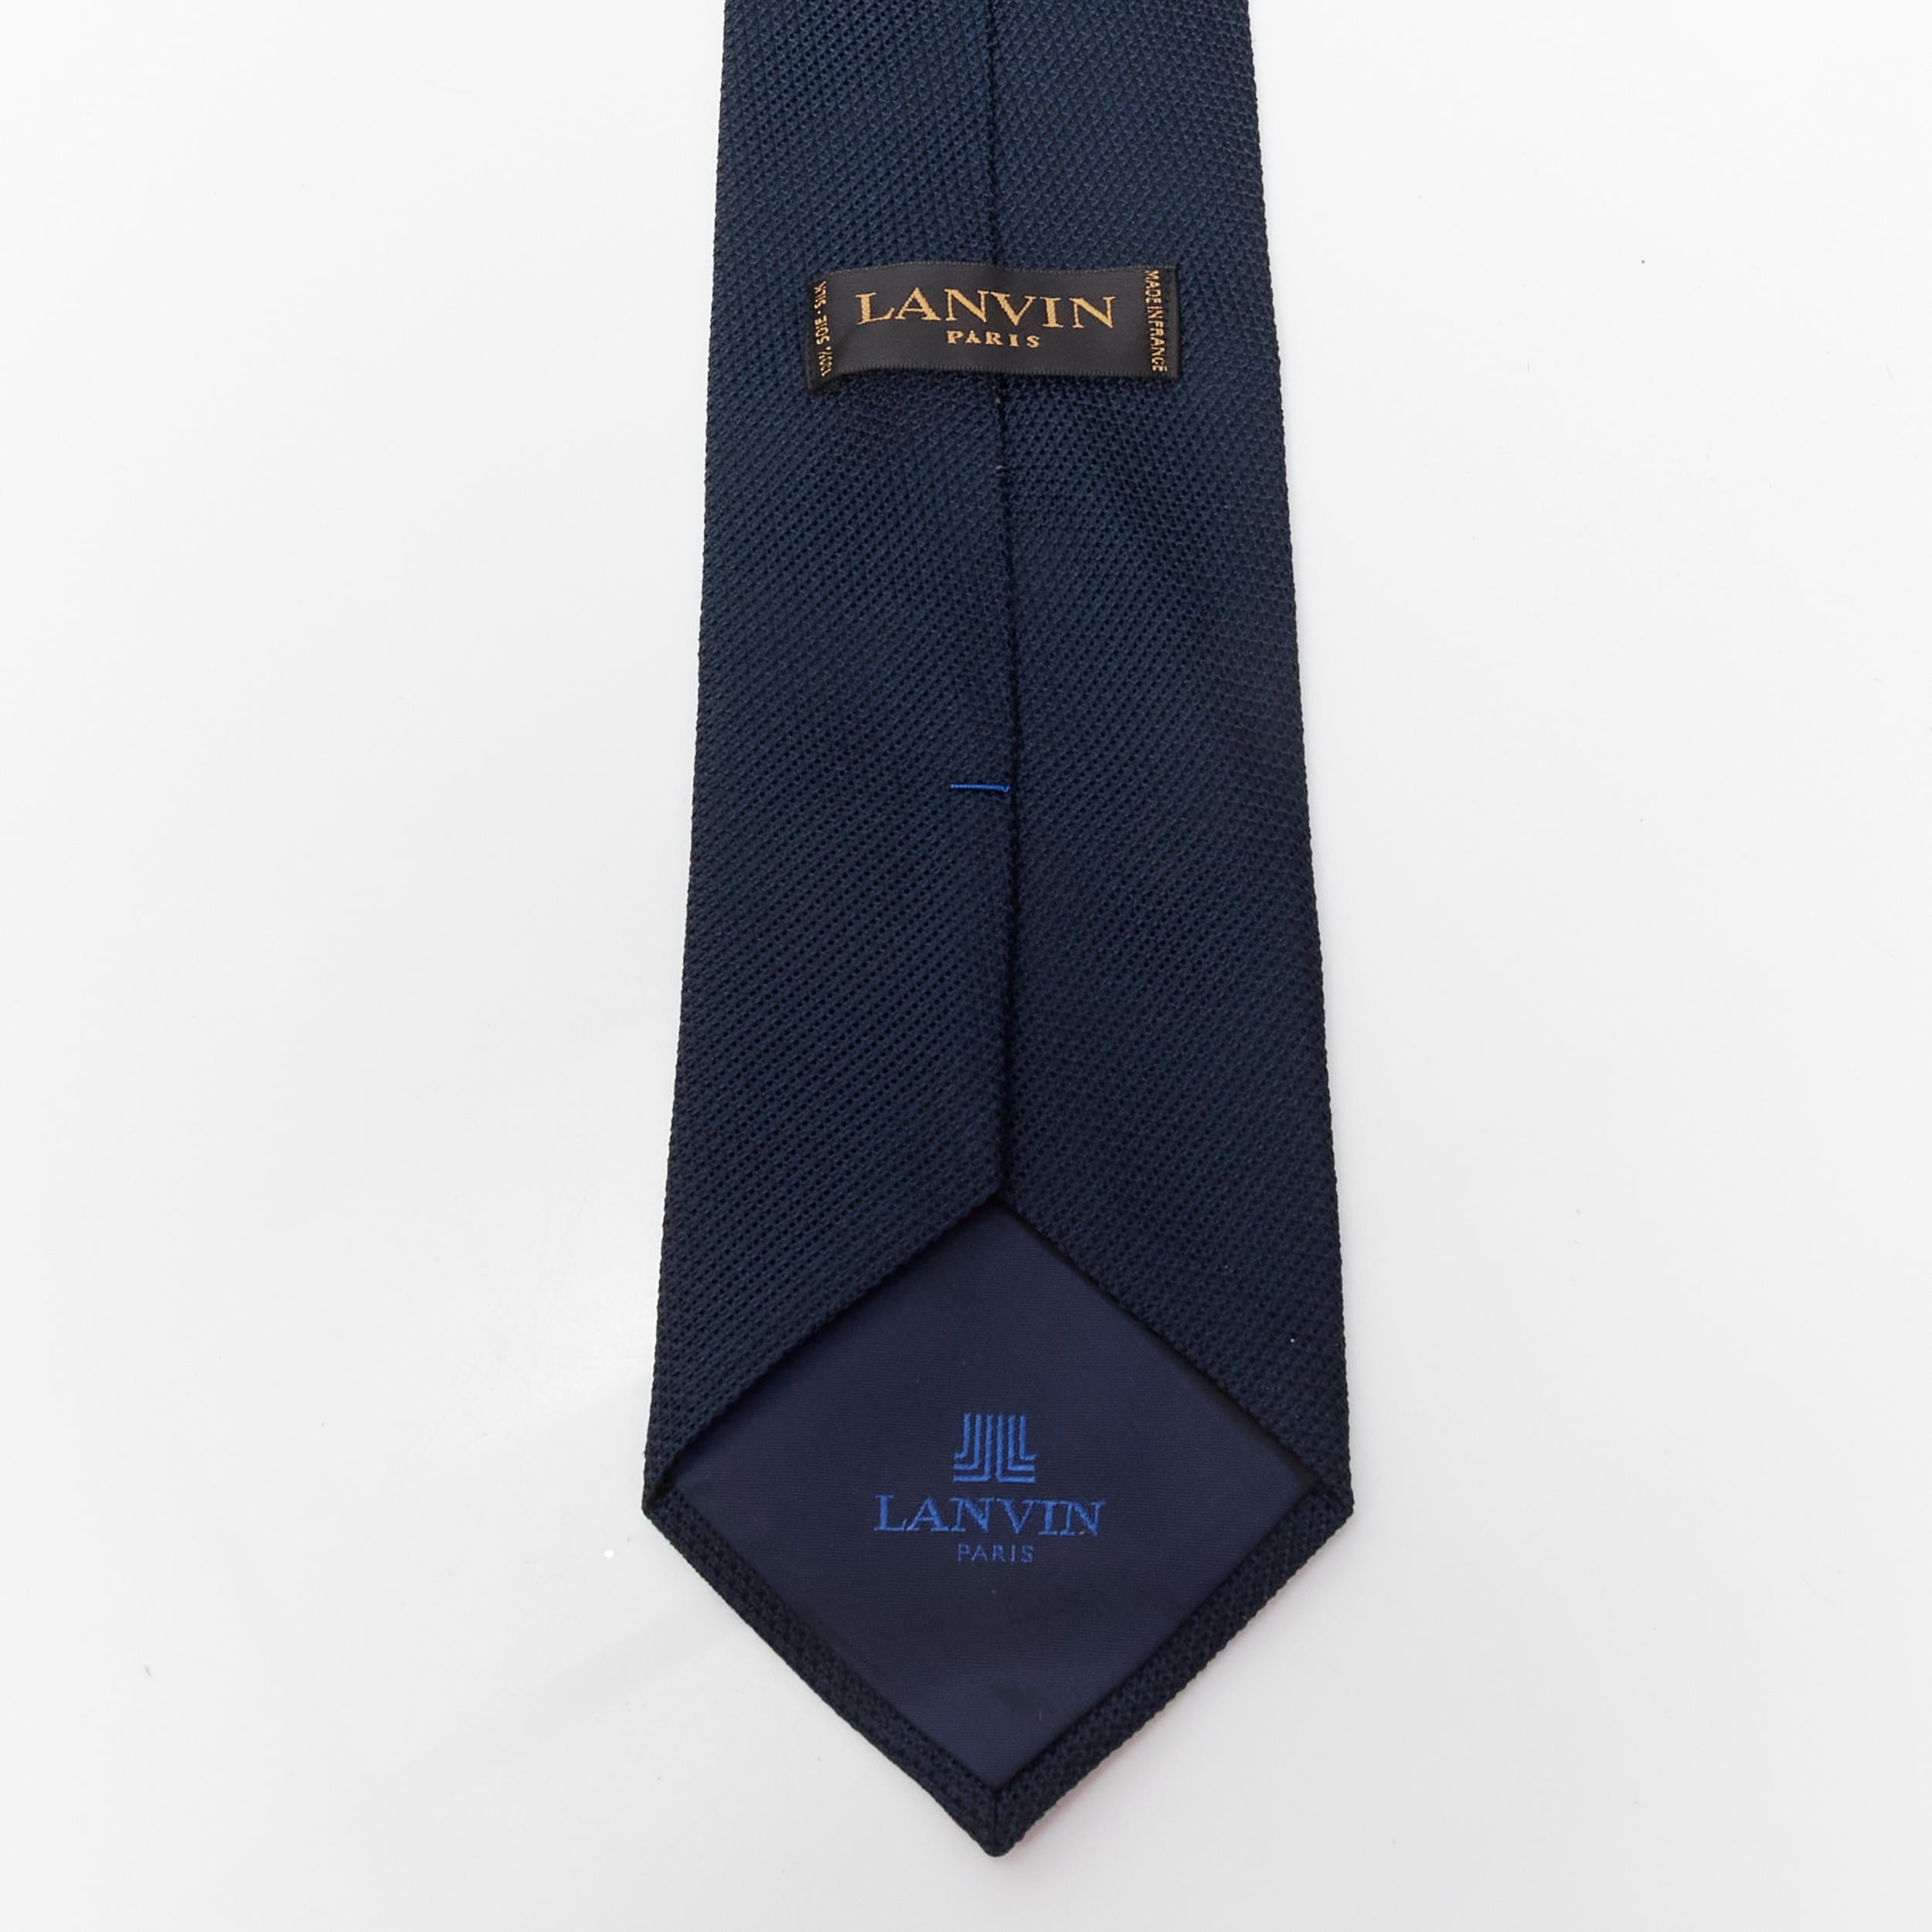 LANVIN 2004 Alber Elbaz fox fur detachable navy blue tie shawl scarf collar 1